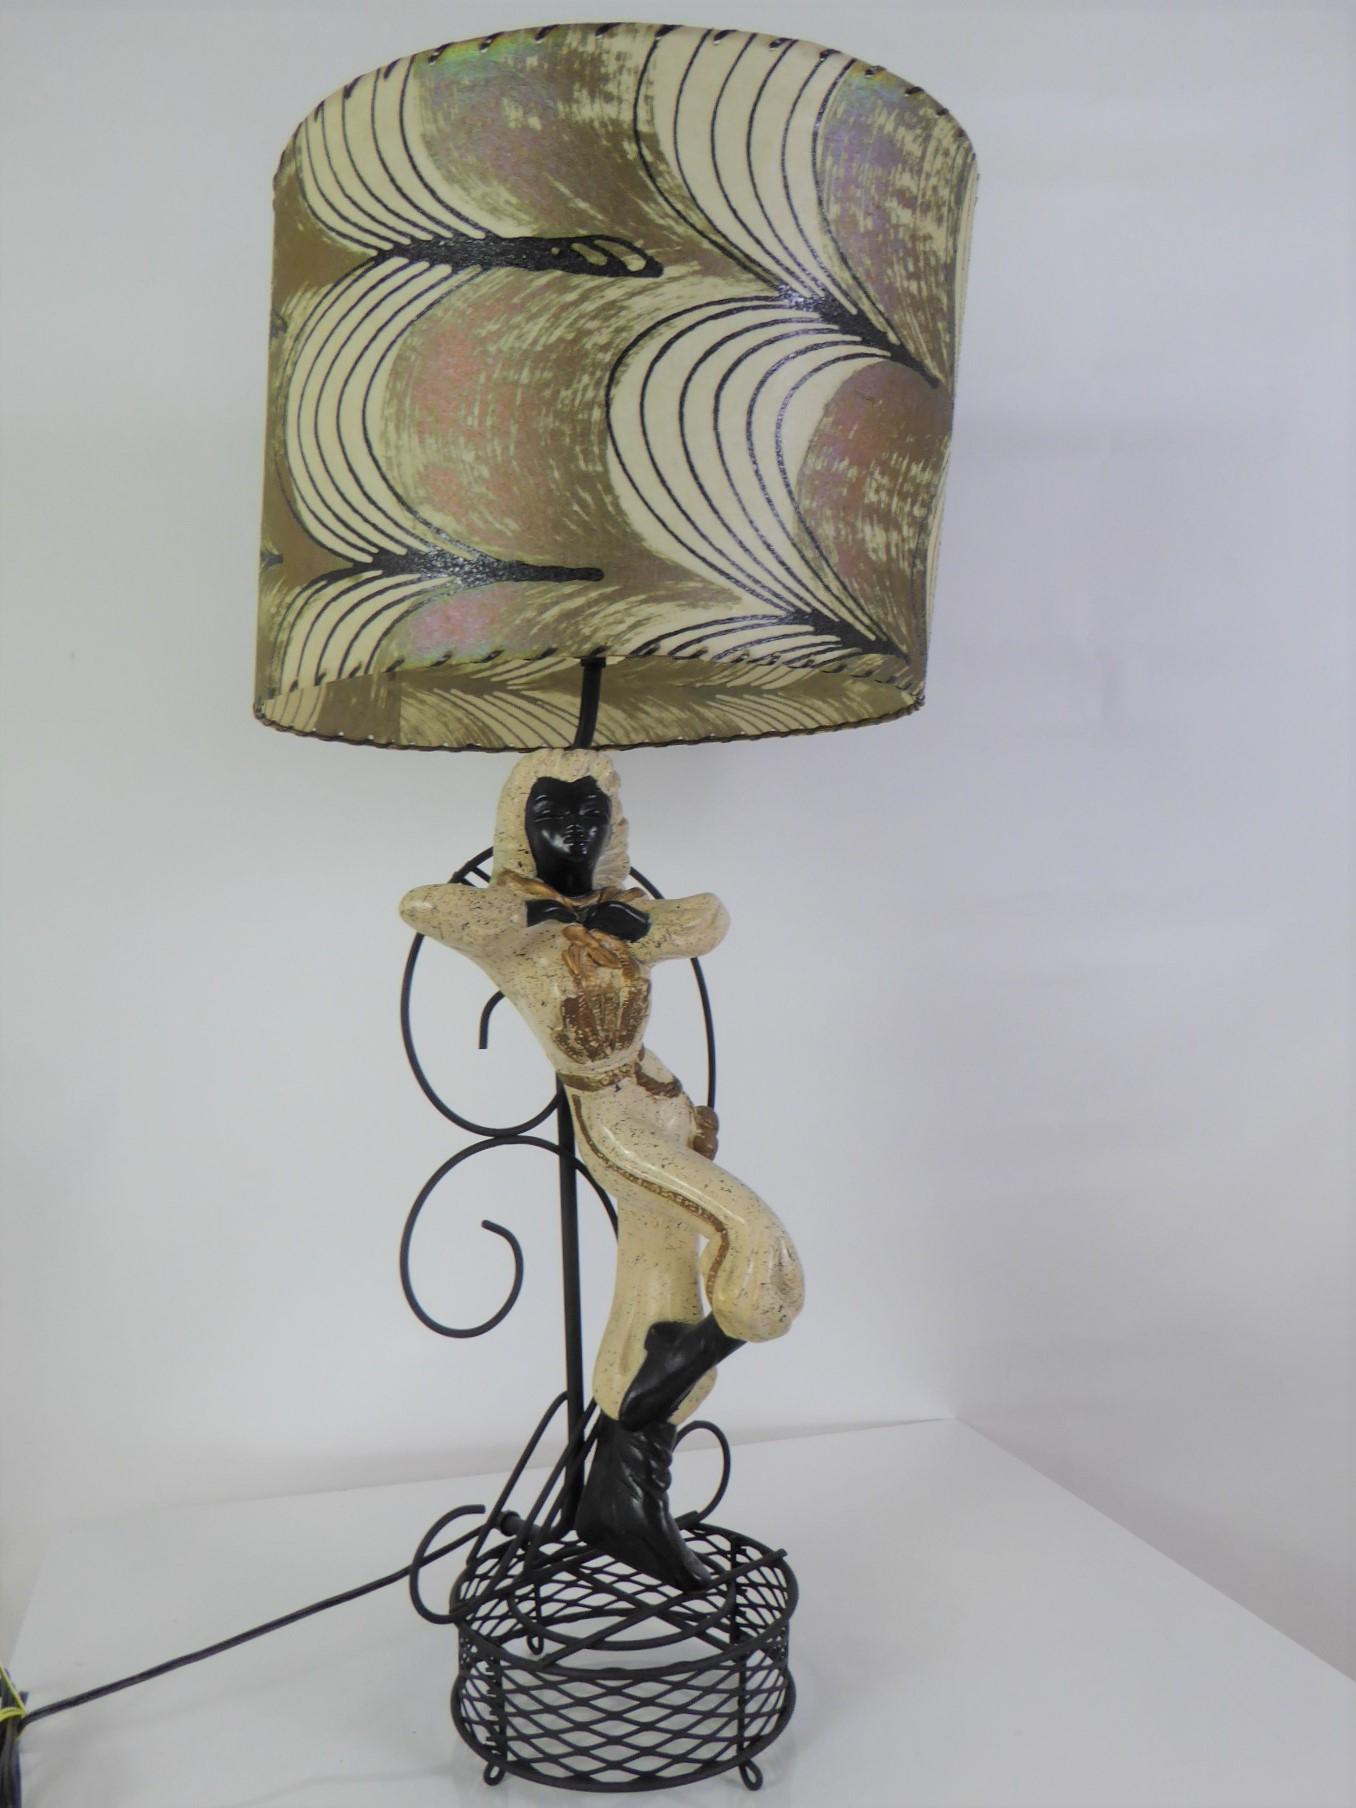 Diese schöne Gipslampe aus der Mitte des Jahrhunderts zeigt ein argentinisches Gaucho-Mädchen mit ihrem Kopftuch um den Hals und ihren Bolos (Waffen) an der Seite. Farbpalette Schwarz, Creme mit goldenen Akzenten.
Die Lampe wurde neu verkabelt und